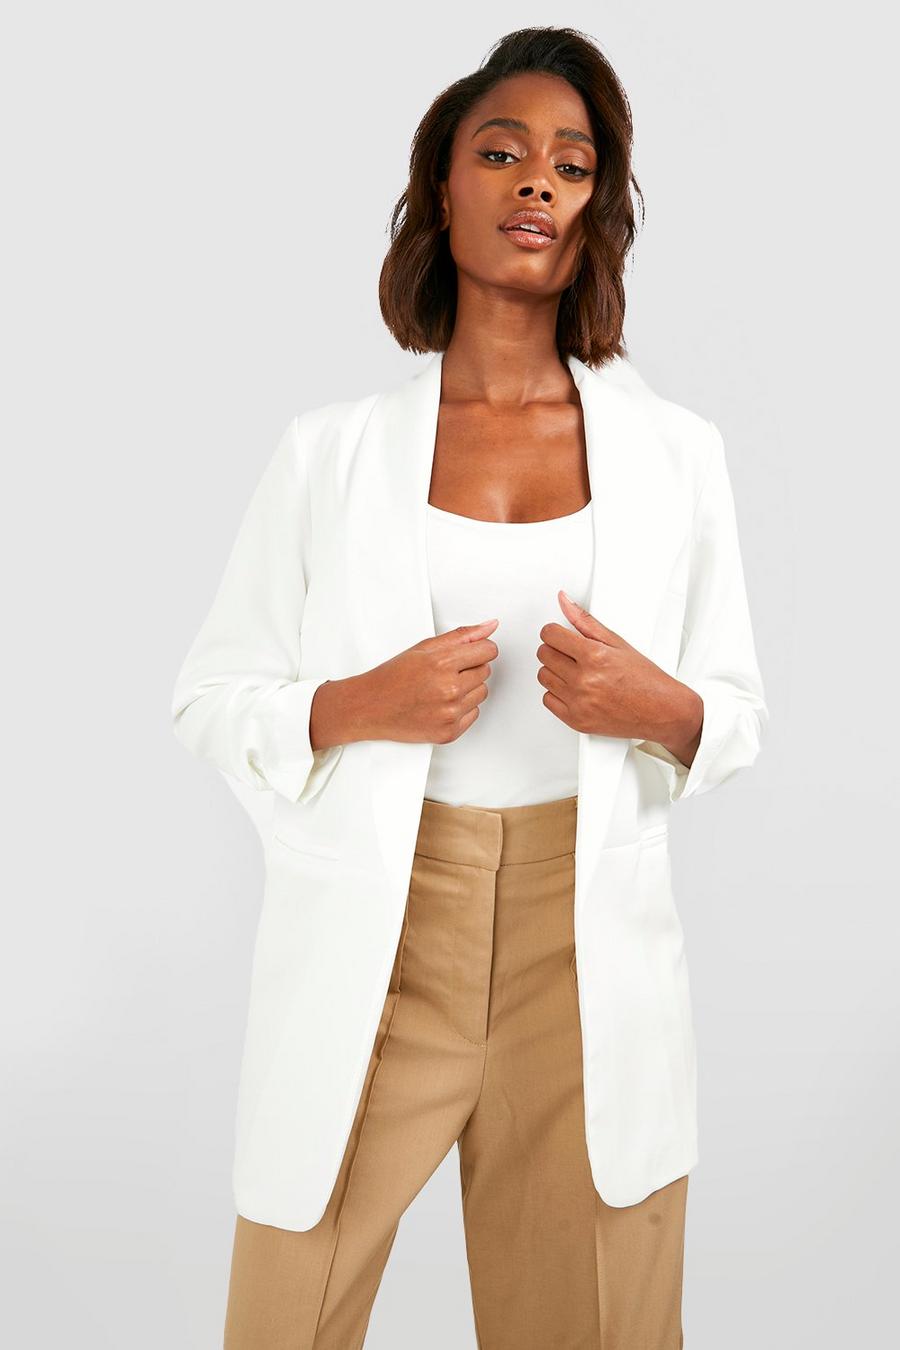 Удлиненный белый пиджак женский